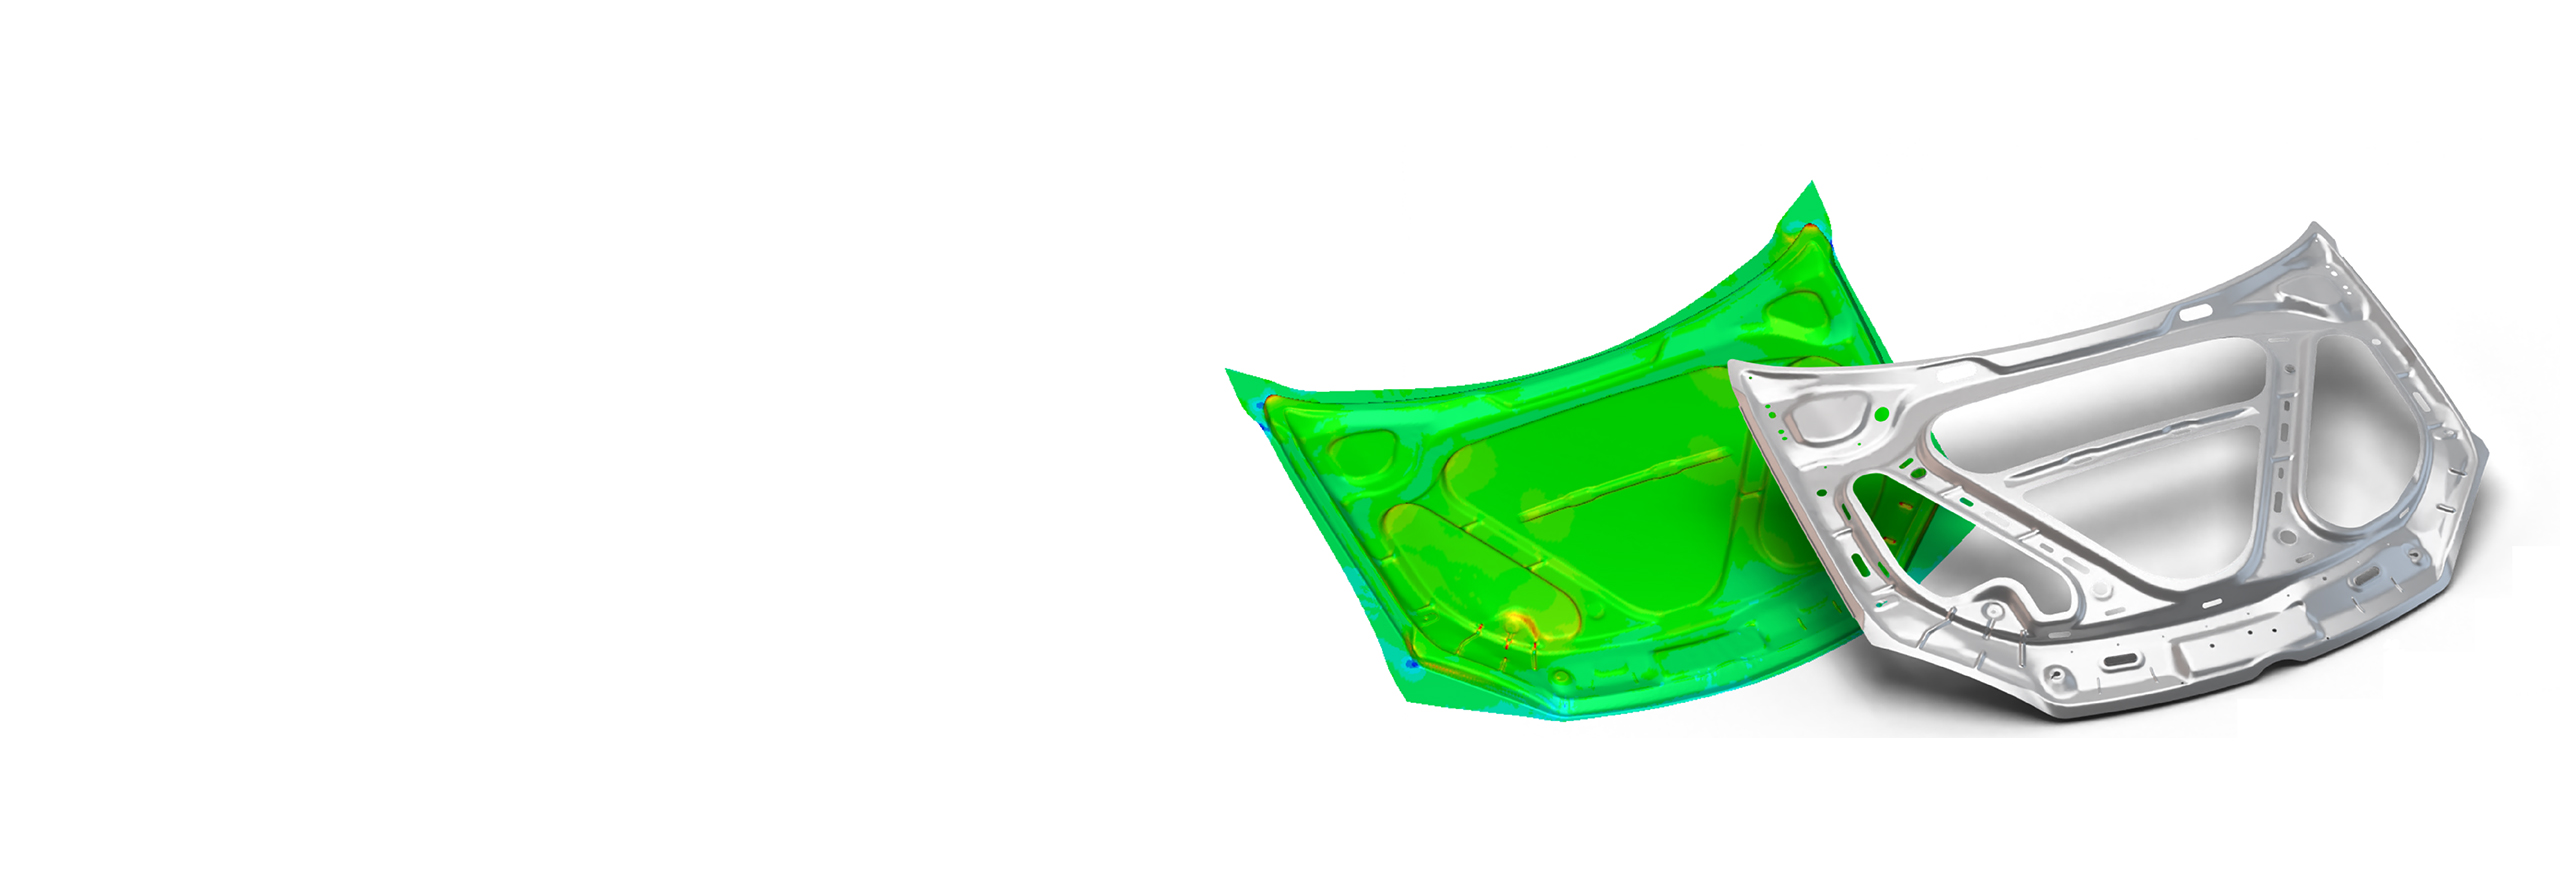 FTI FASTIncremental, software de análisis incremental de chapa metálica de piezas de automóviles mediante simulación